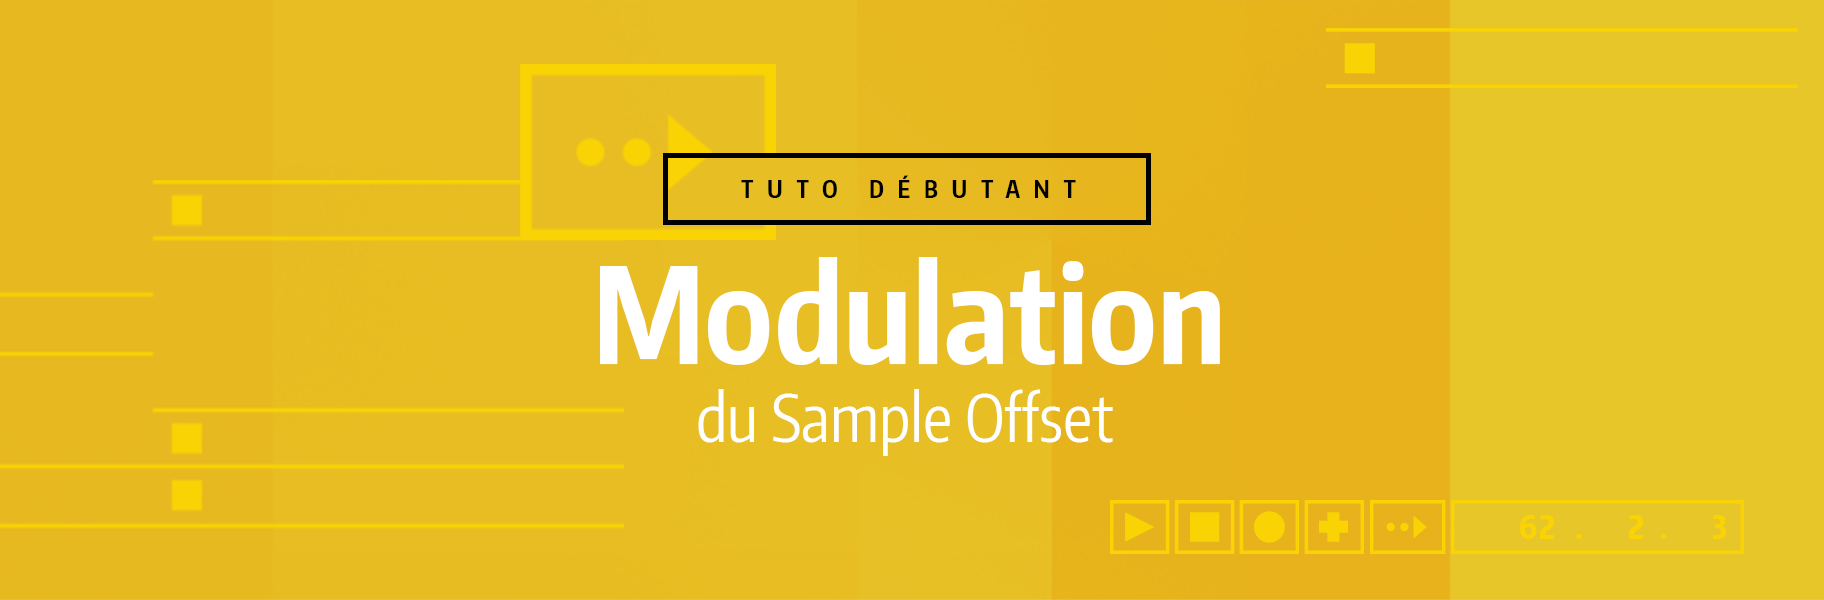 Tutoriel Ableton Live - Modulation du Sample Offset